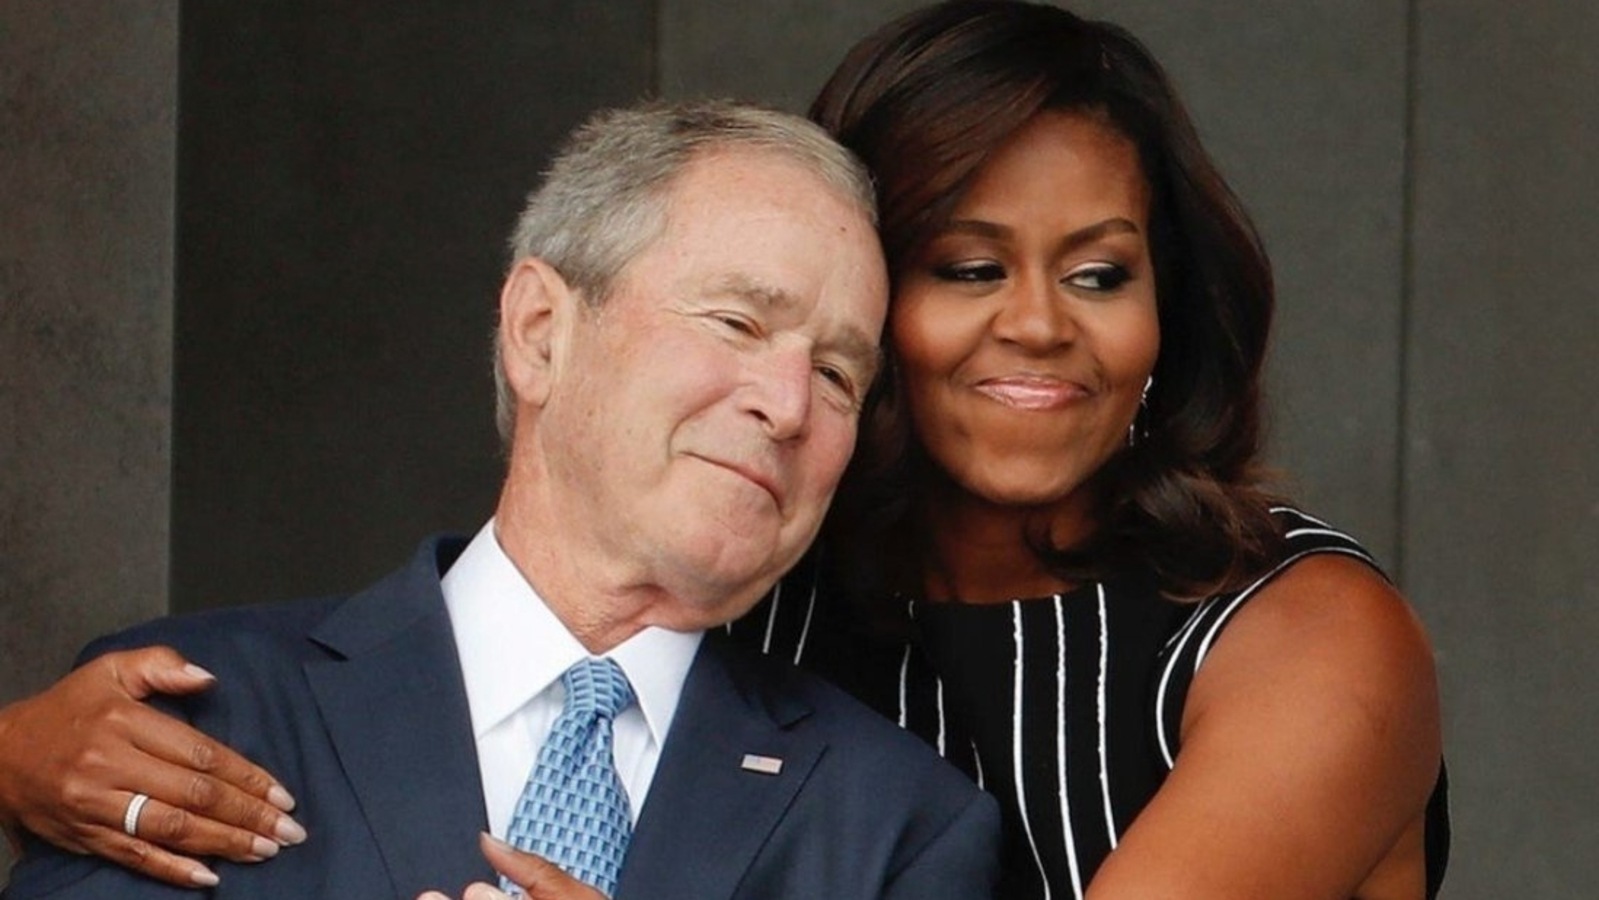    George W. Bush con hermoso, Esposa Laura Bush 